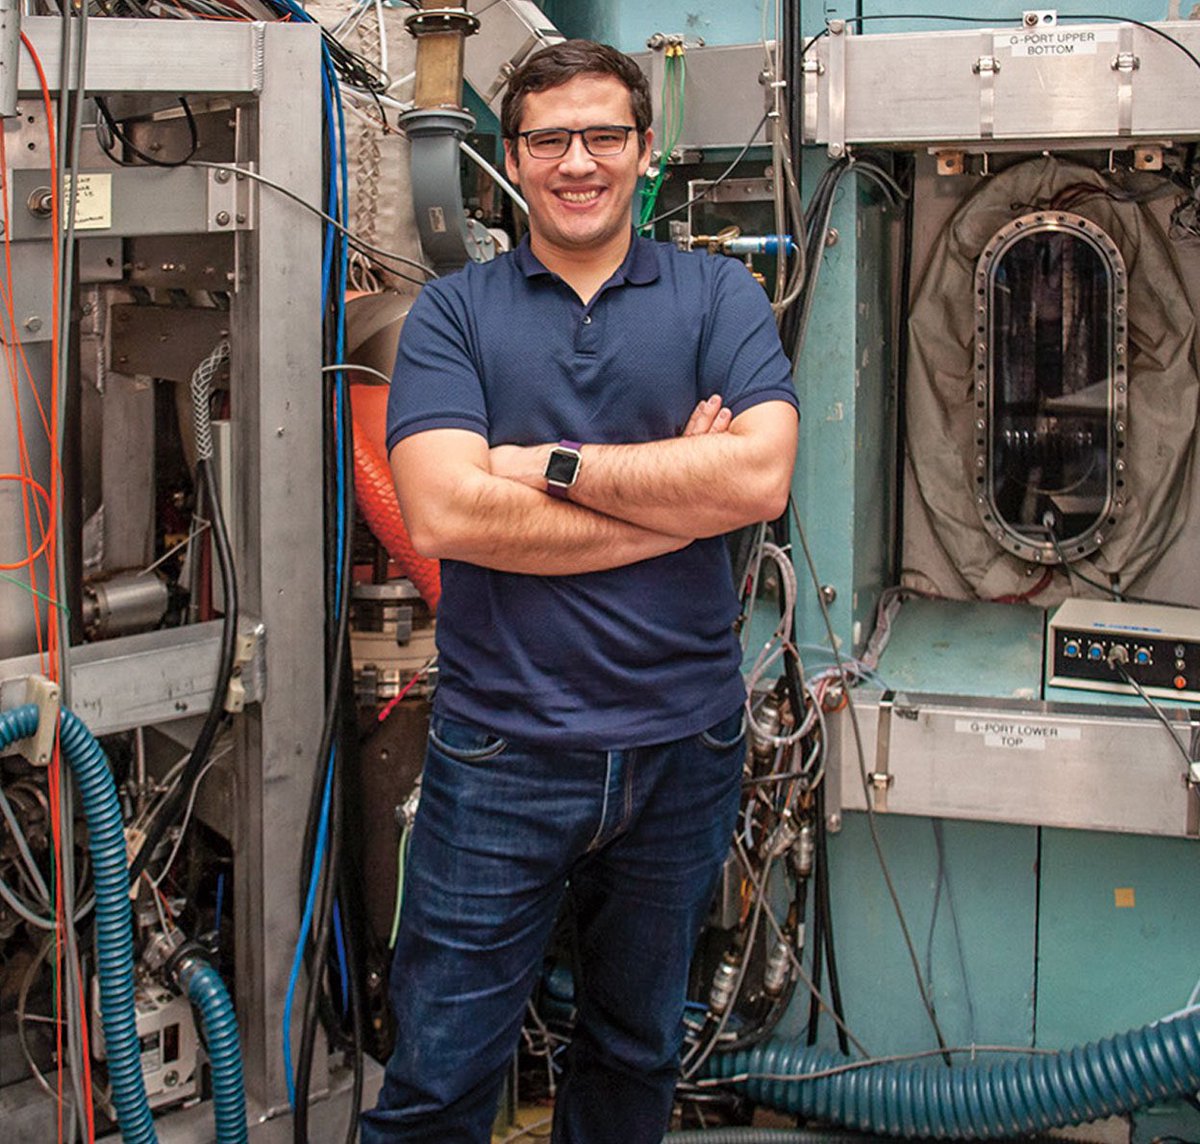 Un español en cabeza de la fusión nuclear. Entrevista a Pablo Rodríguez Fernández @pablo_prf, ingeniero del @MIT lavozdegalicia.es/xlsemanal/pers…